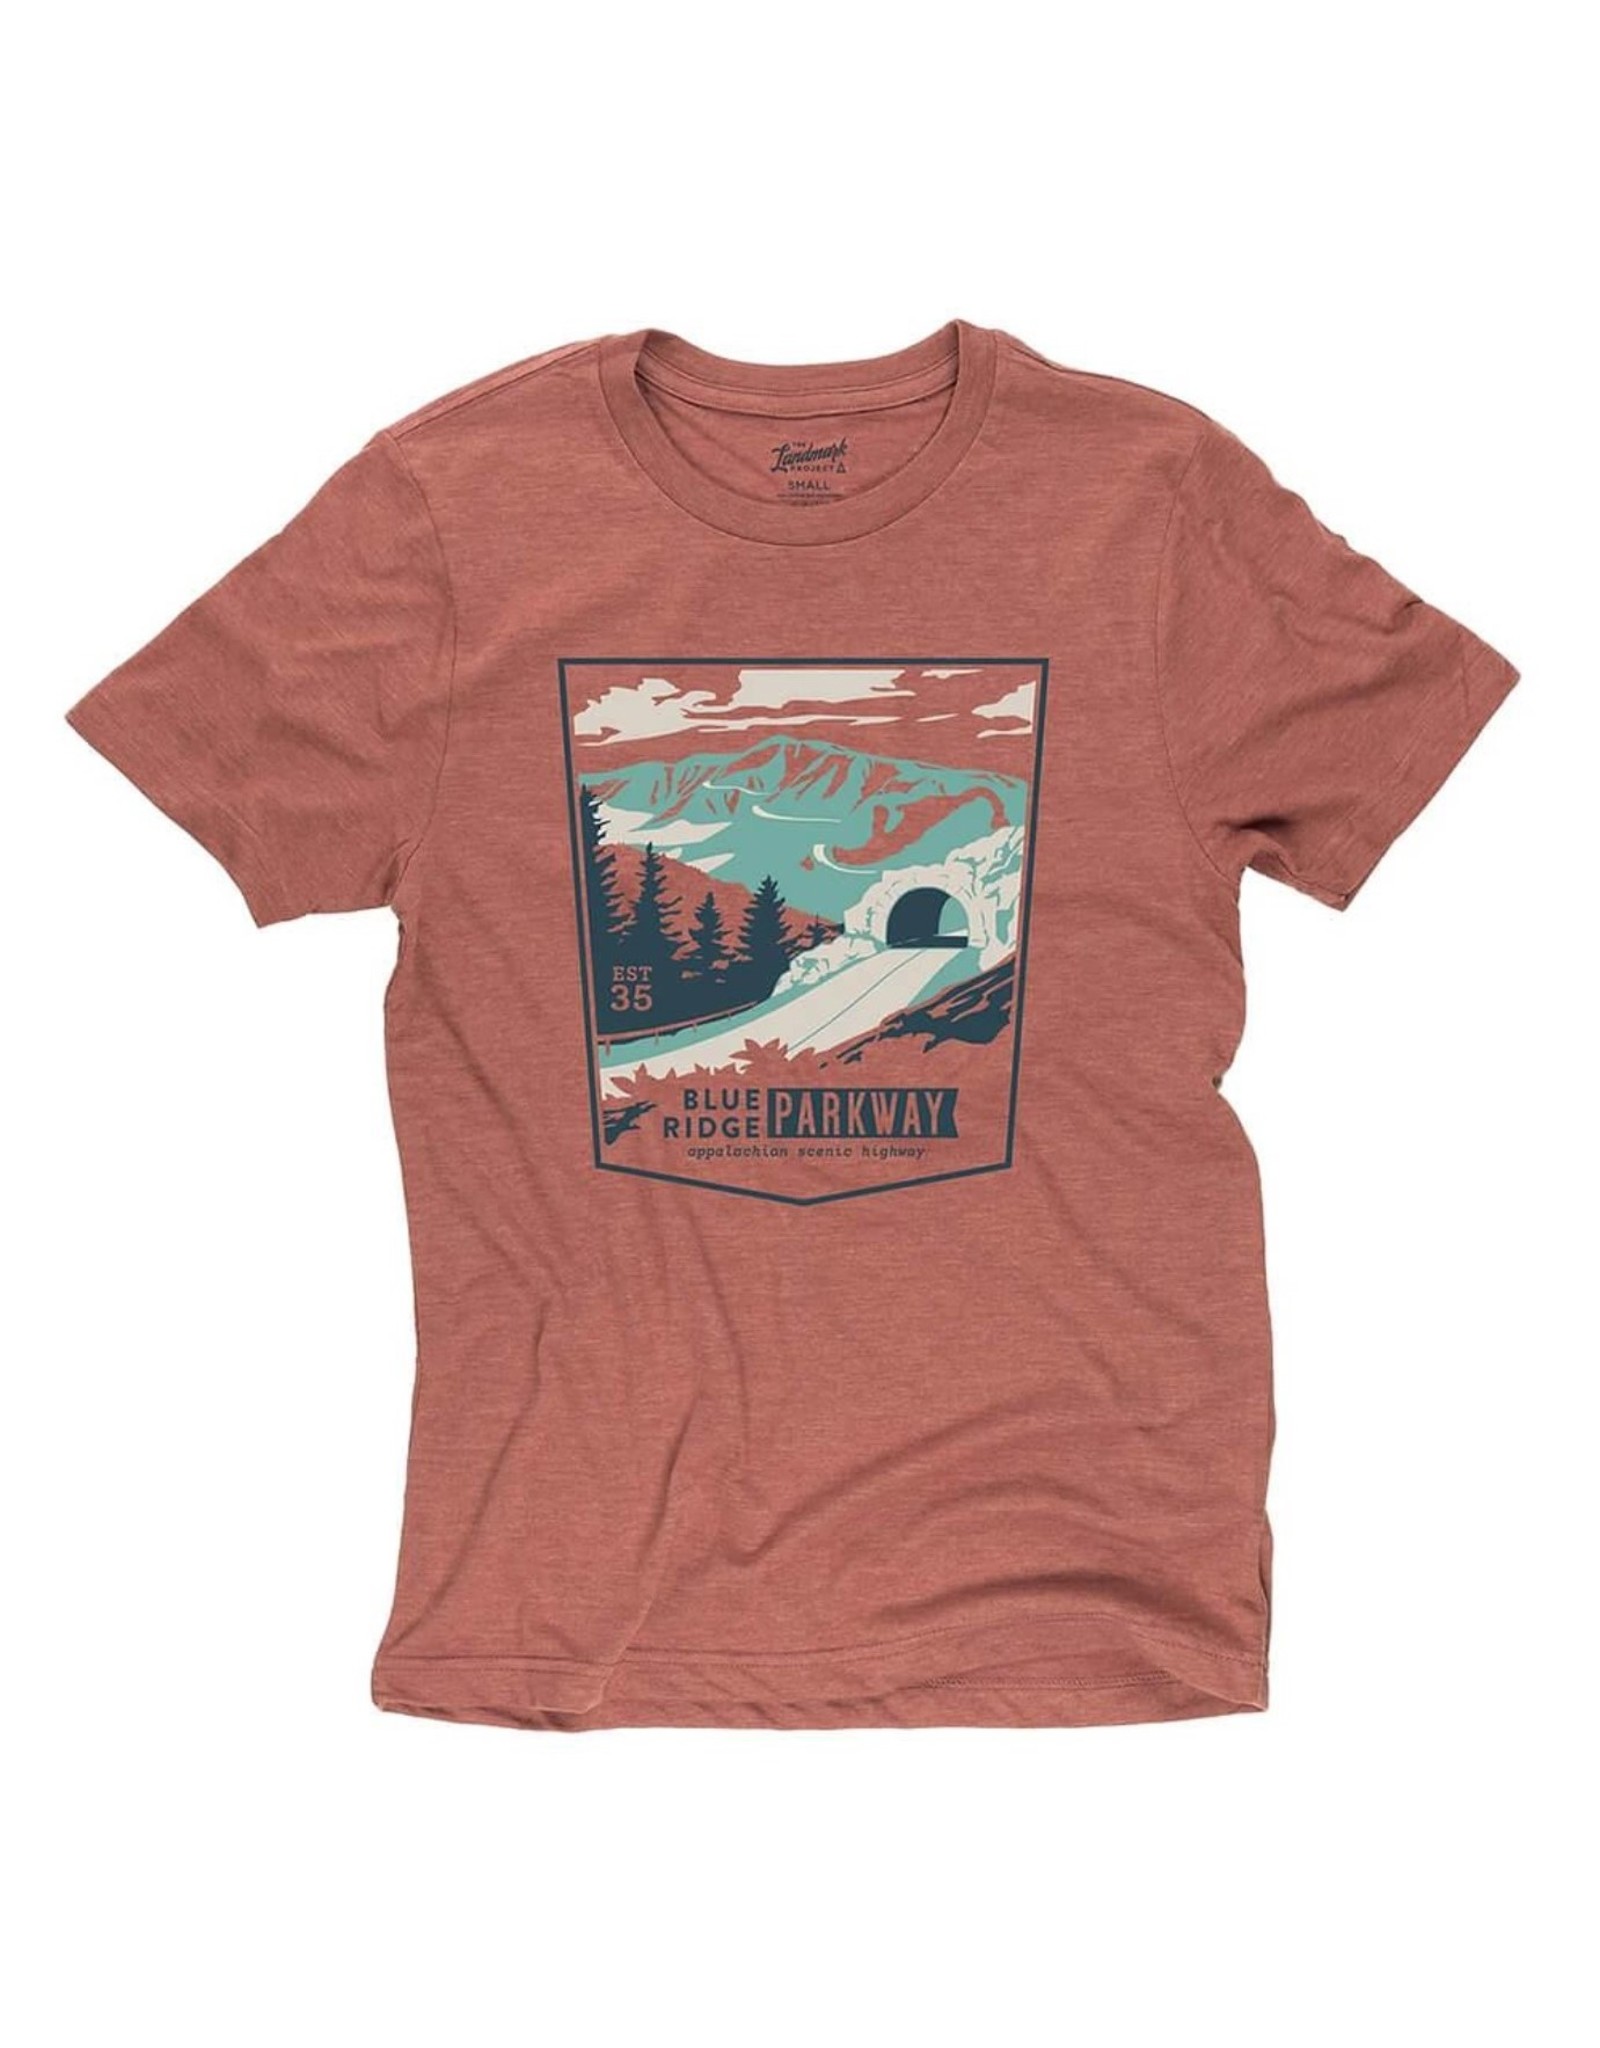 Blue Ridge Parkway Shirt- Red Rocks